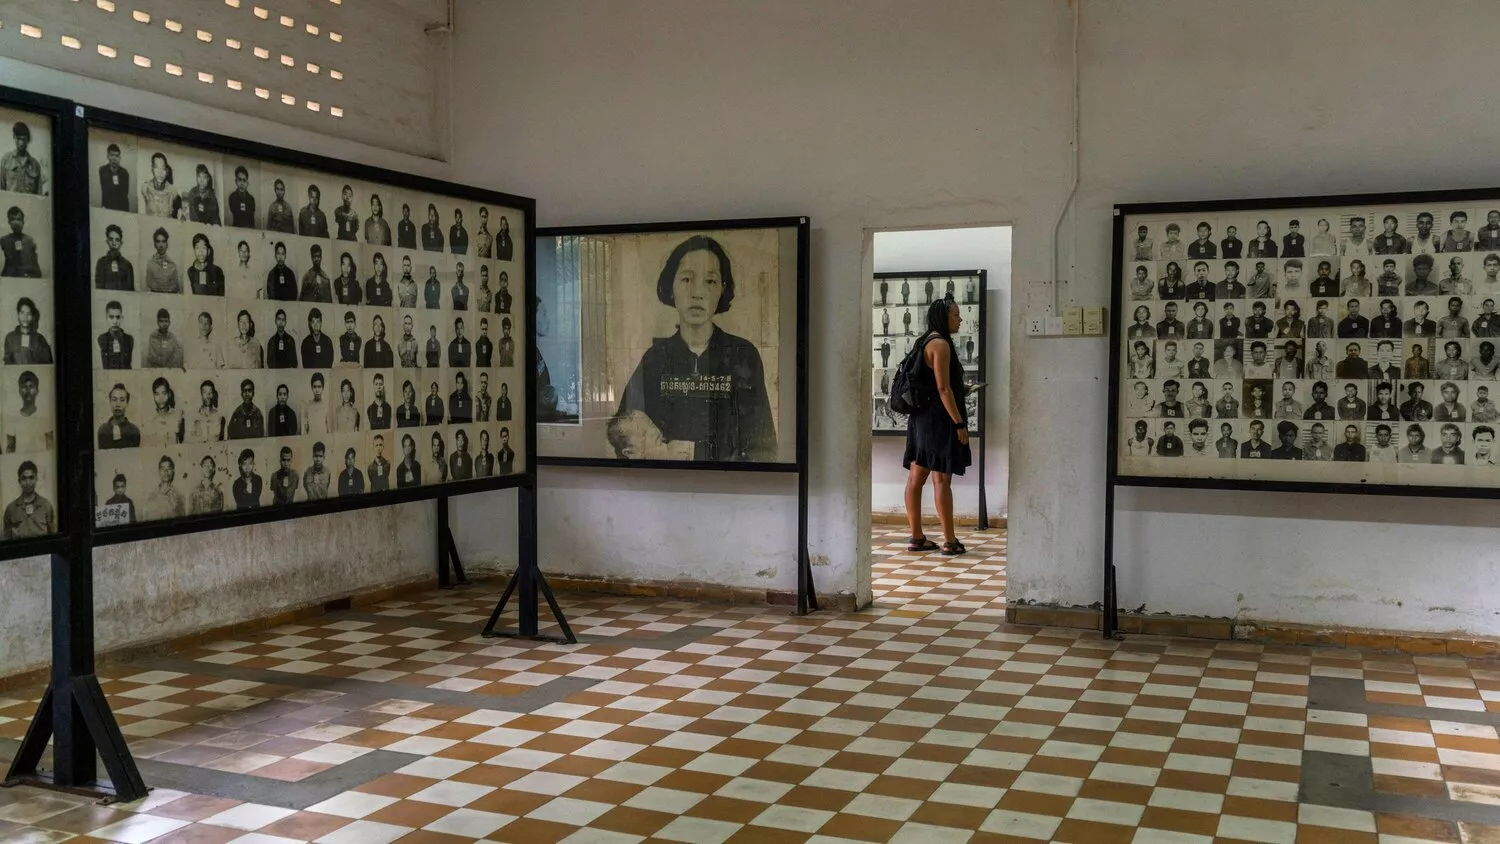 Tuol Sleng s'ha convertit en un espai de memòria